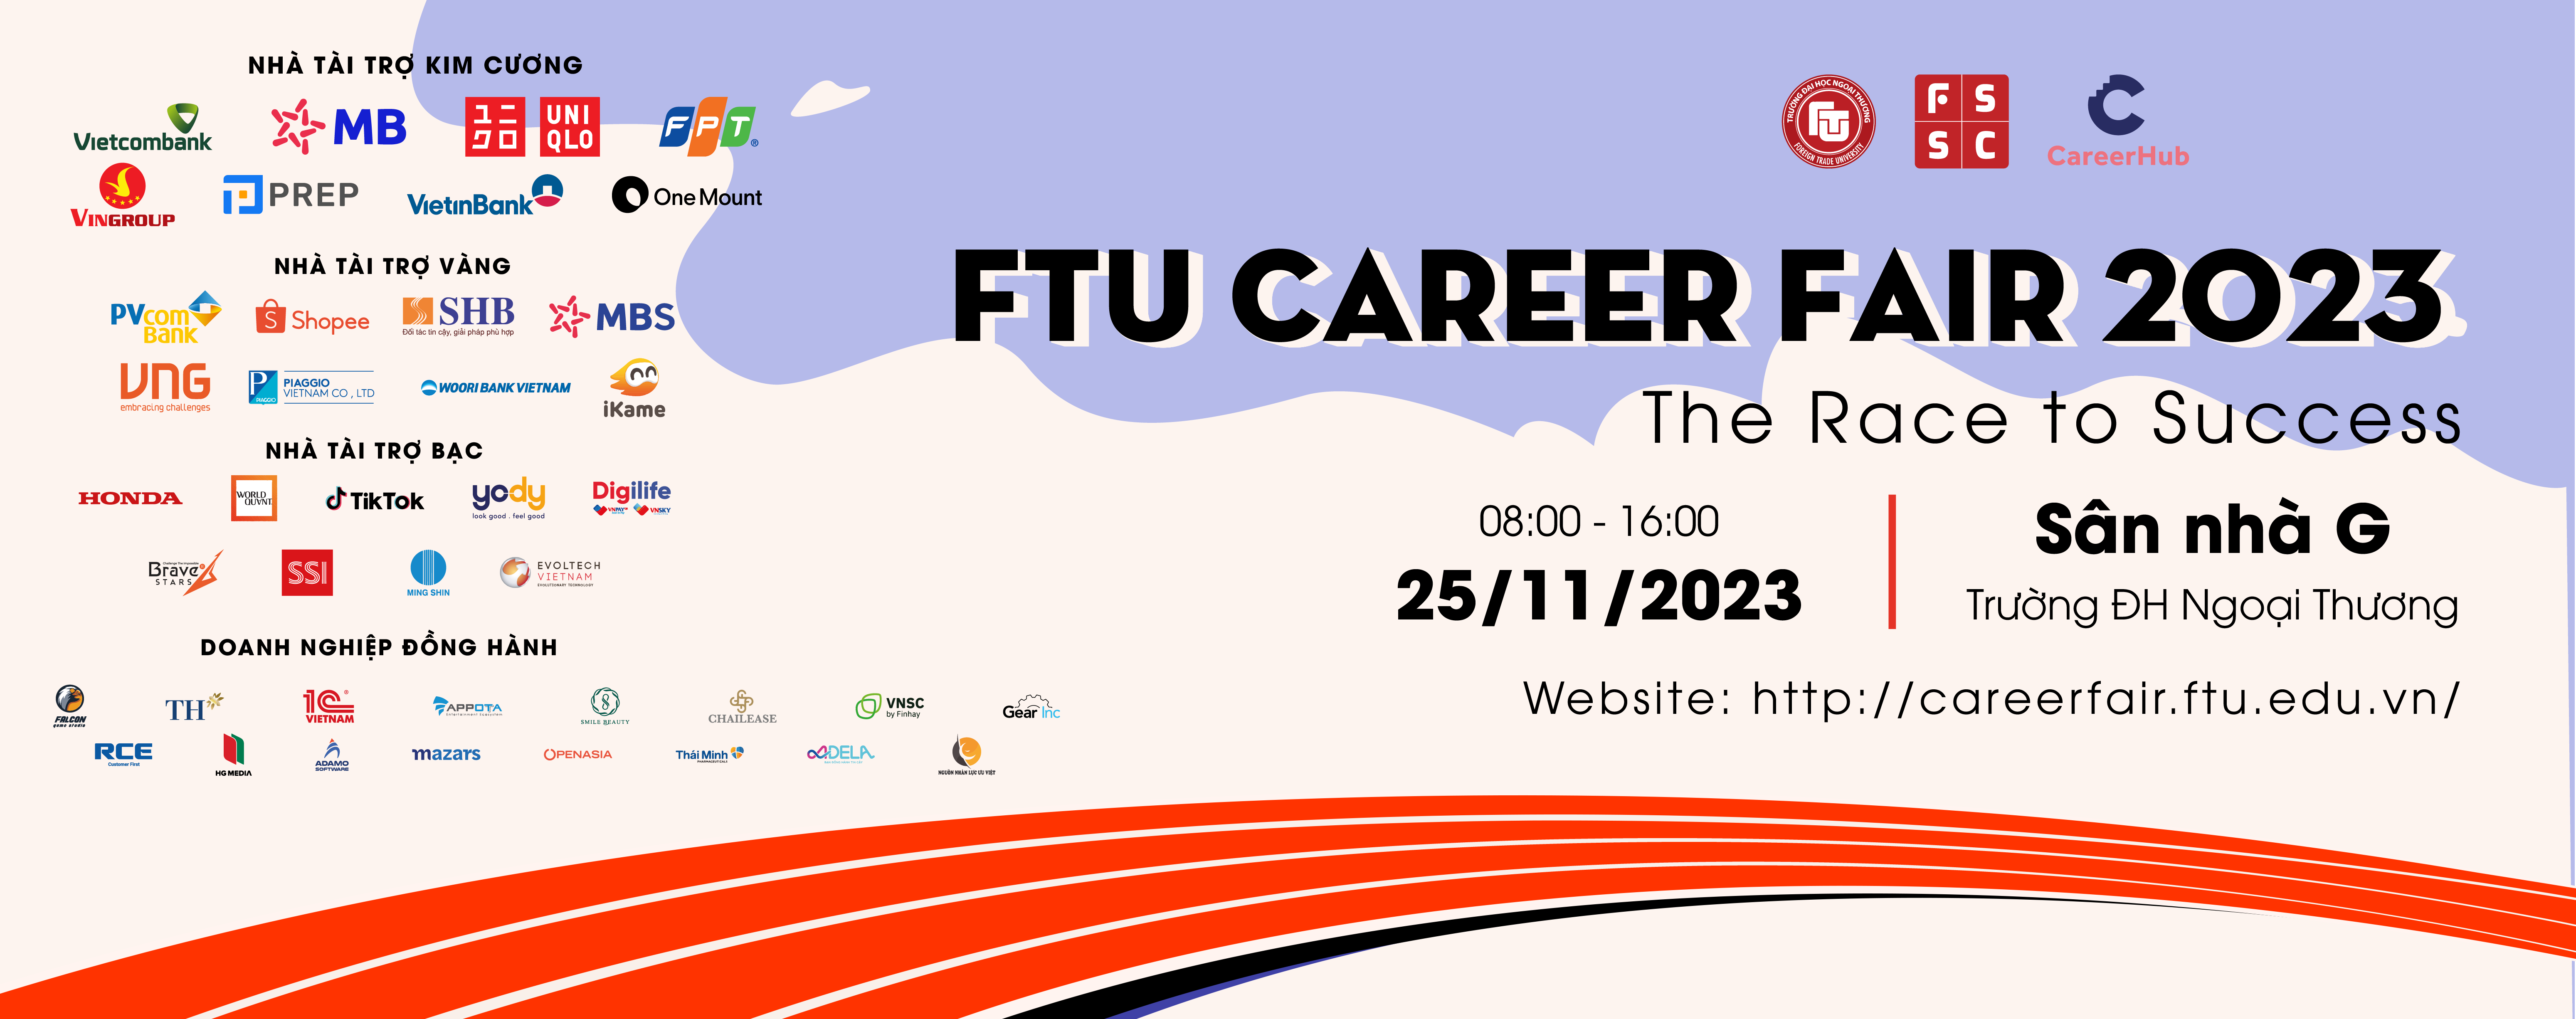 Ngày hội việc làm FTU Career Fair 2023